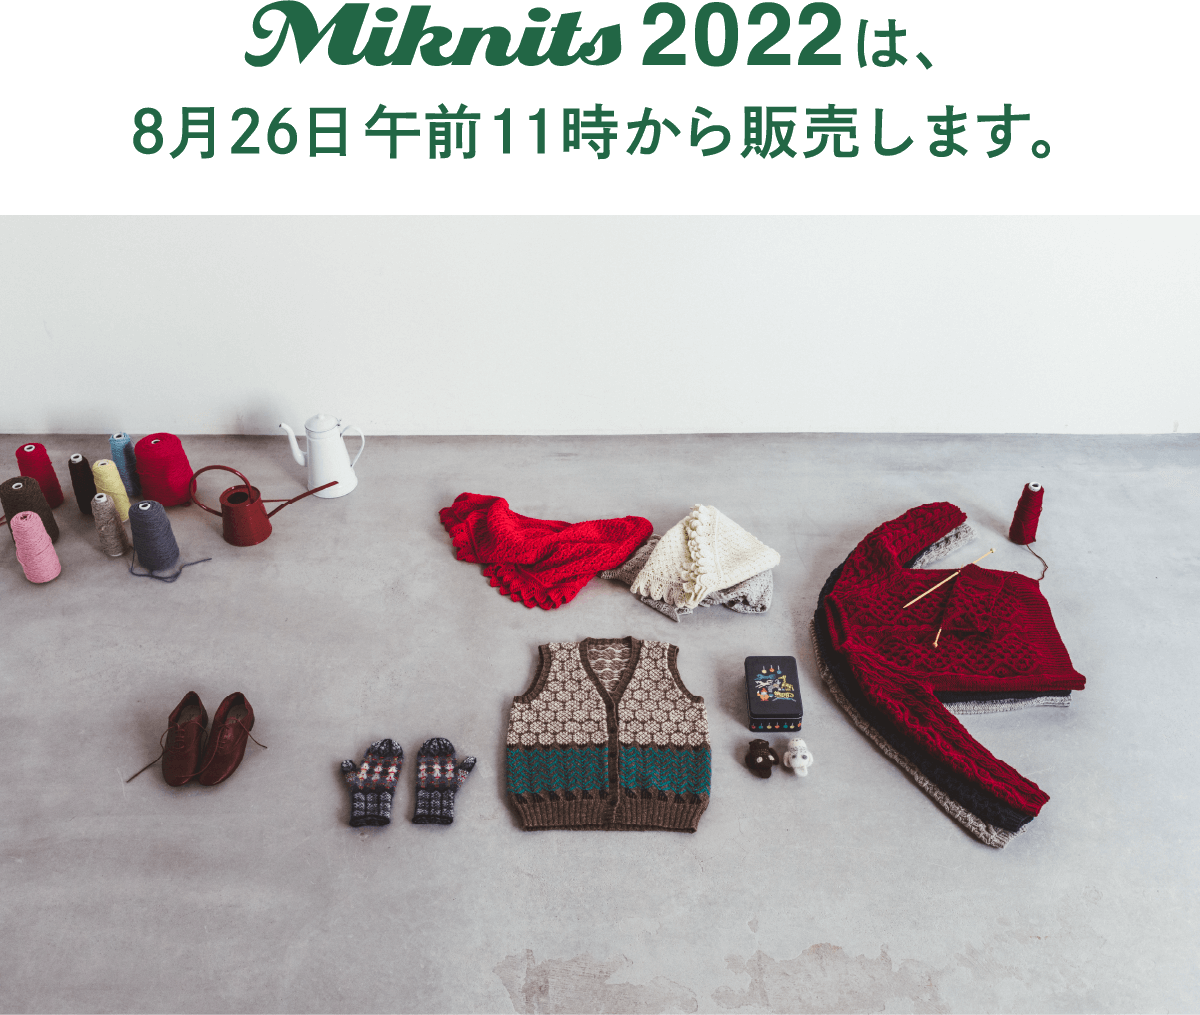 Miknits2022 は、8月26日午前11時から販売します。